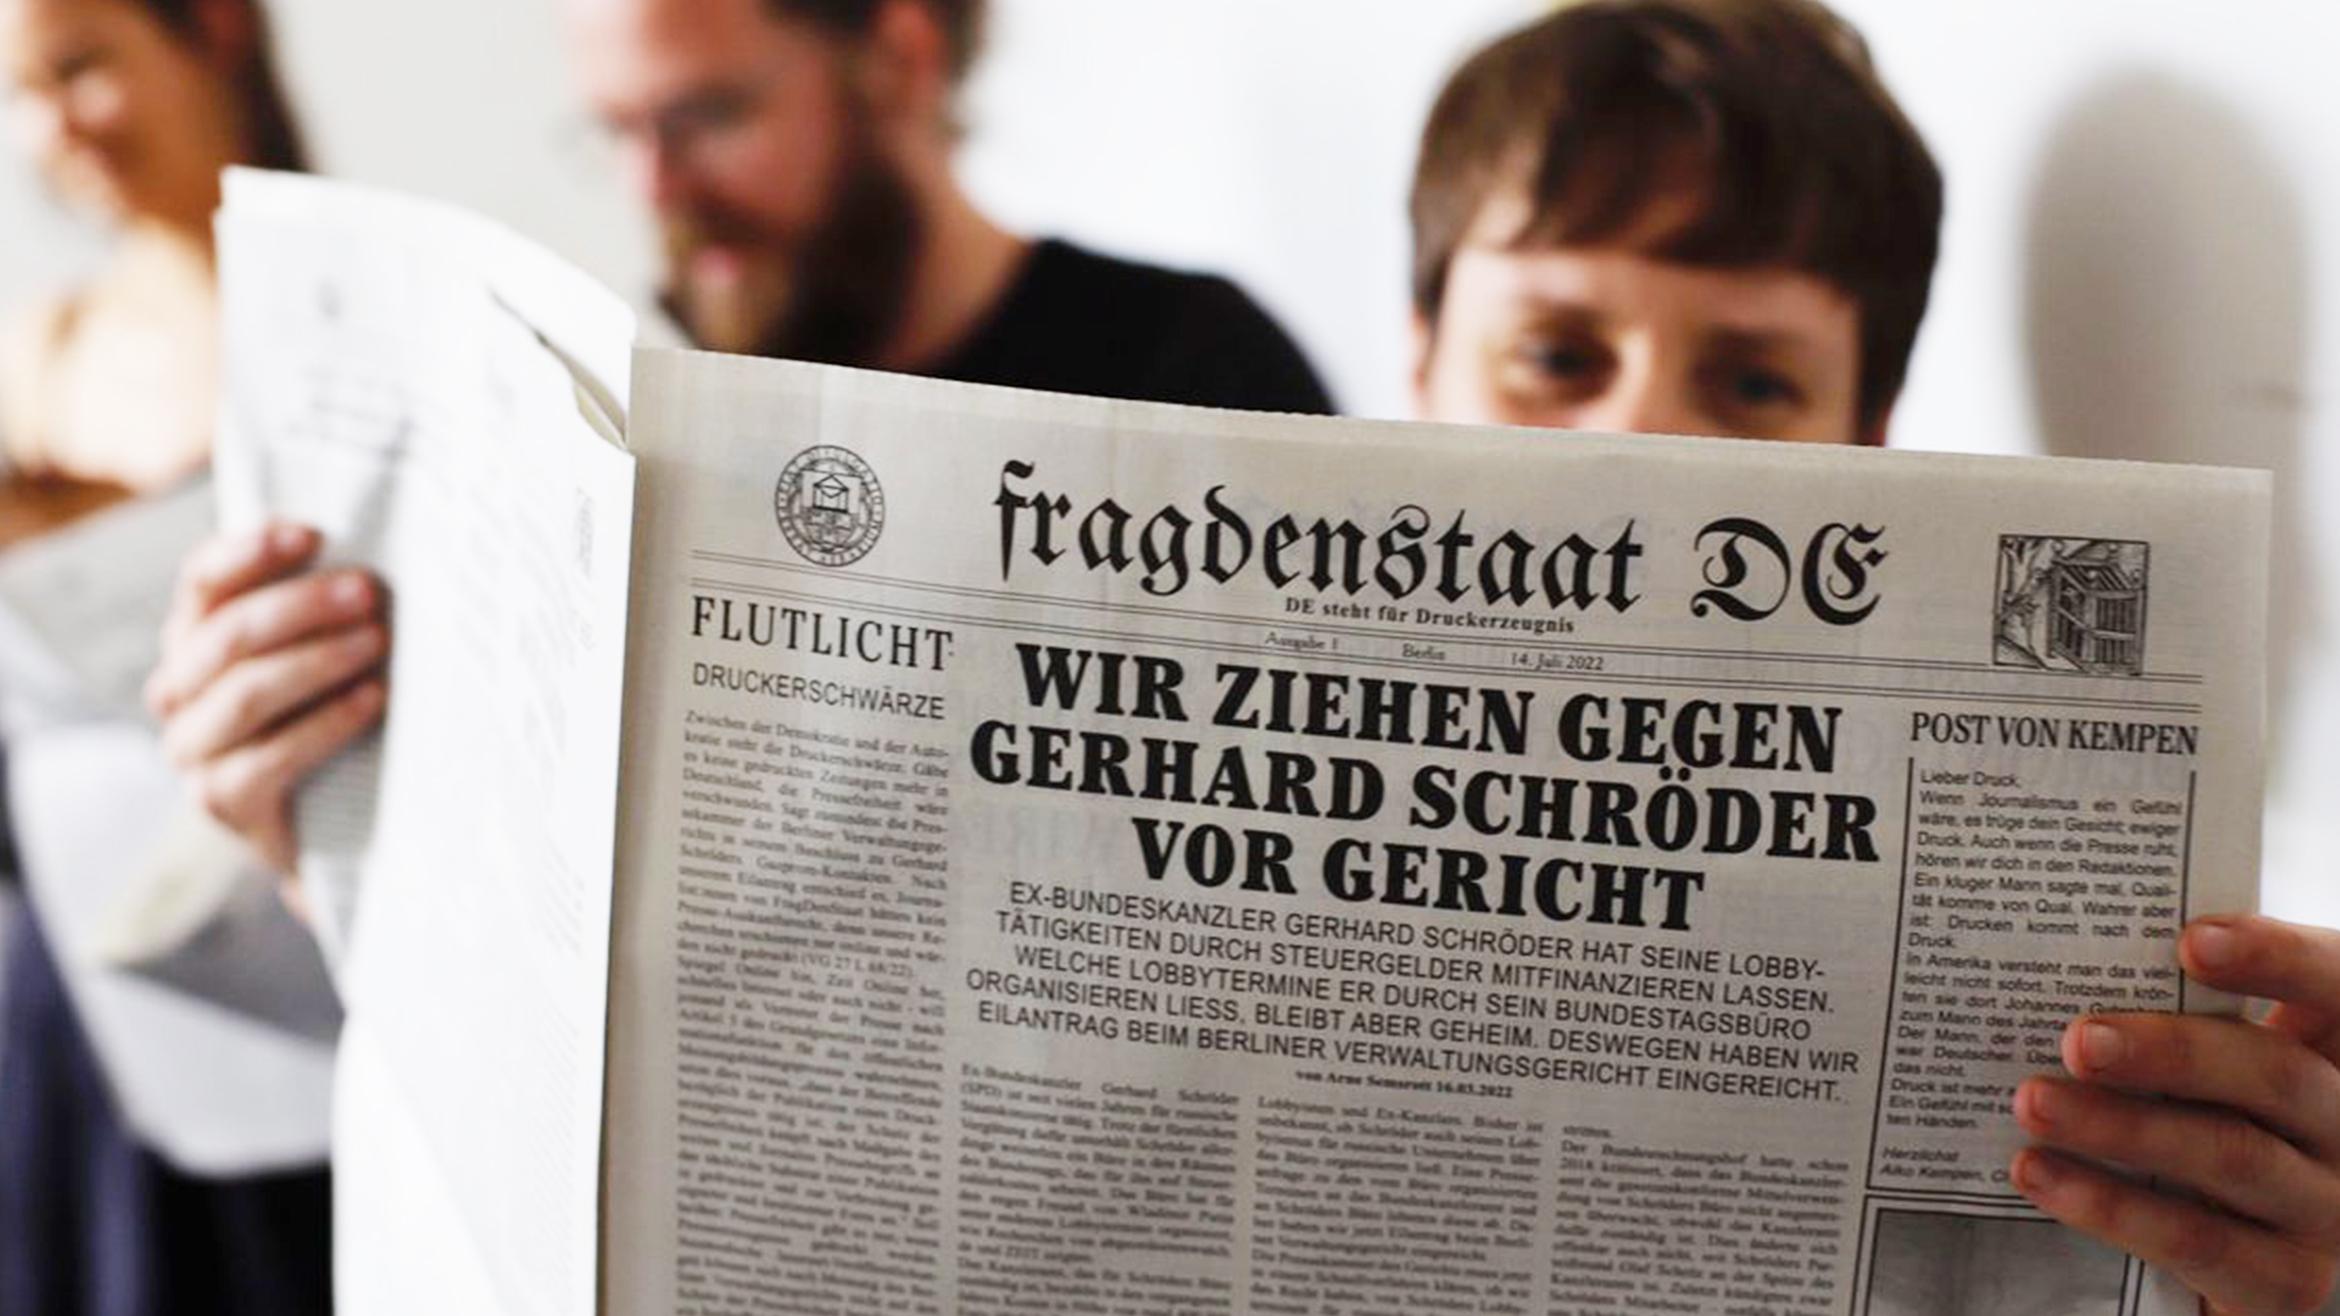 Fragdenstaat.de bringt seine Inhalte in altem Zeitungslook auf Papier –